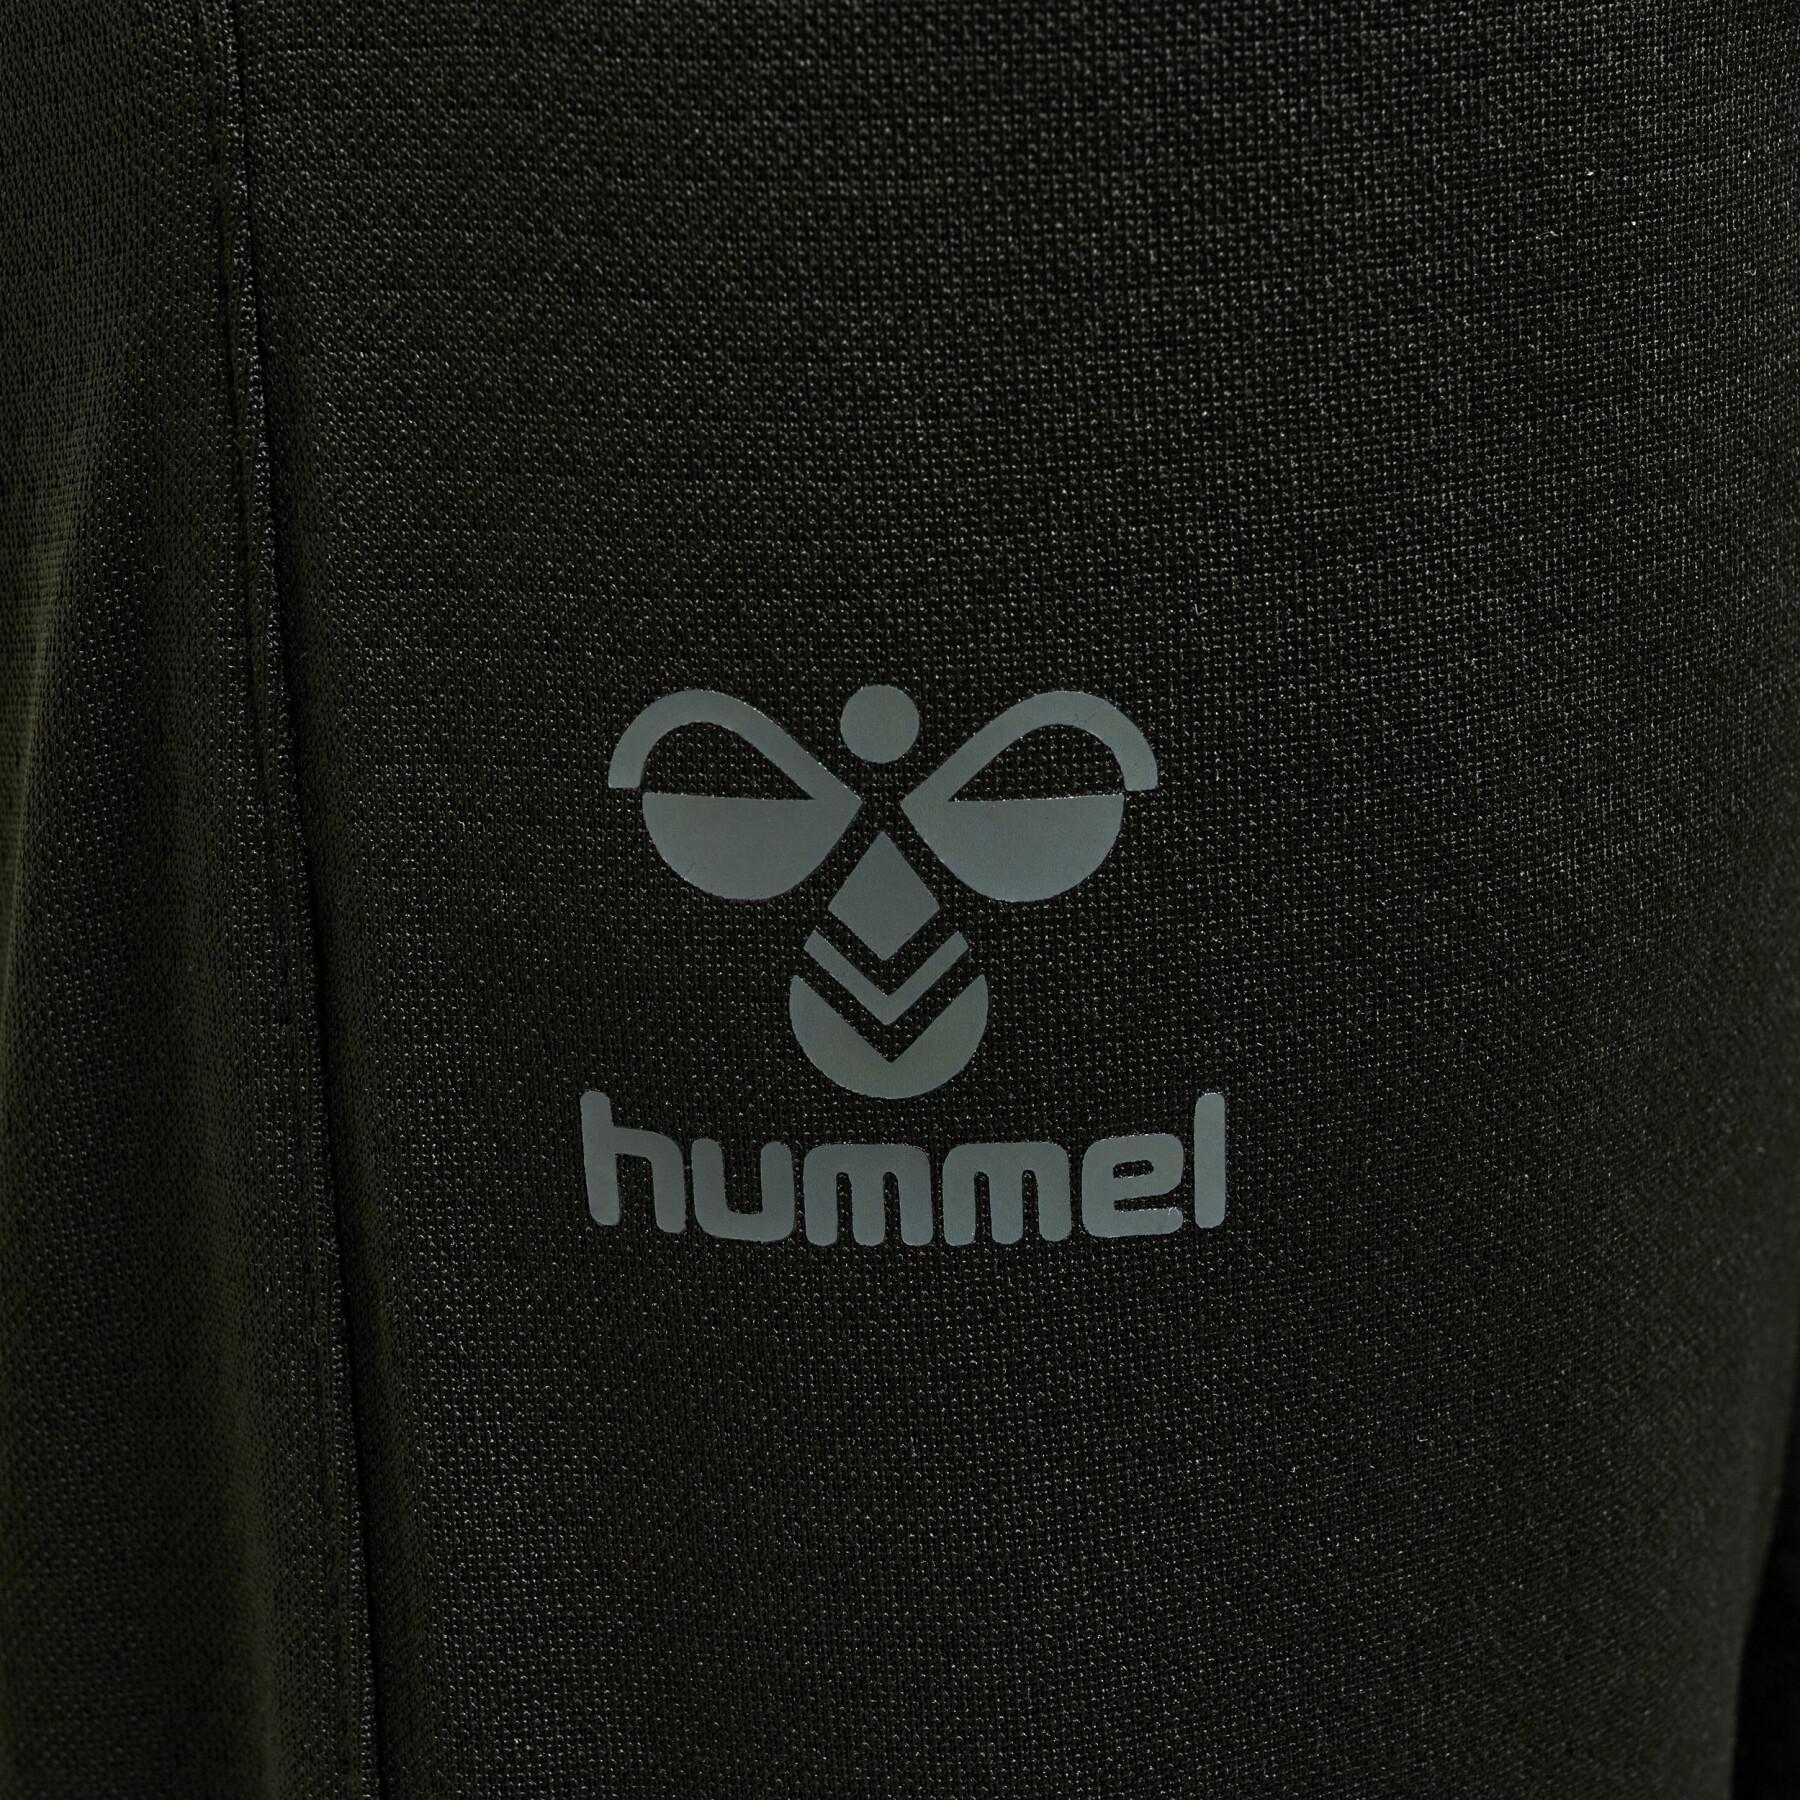 Polyester jogging suit for children Hummel ON-Grid